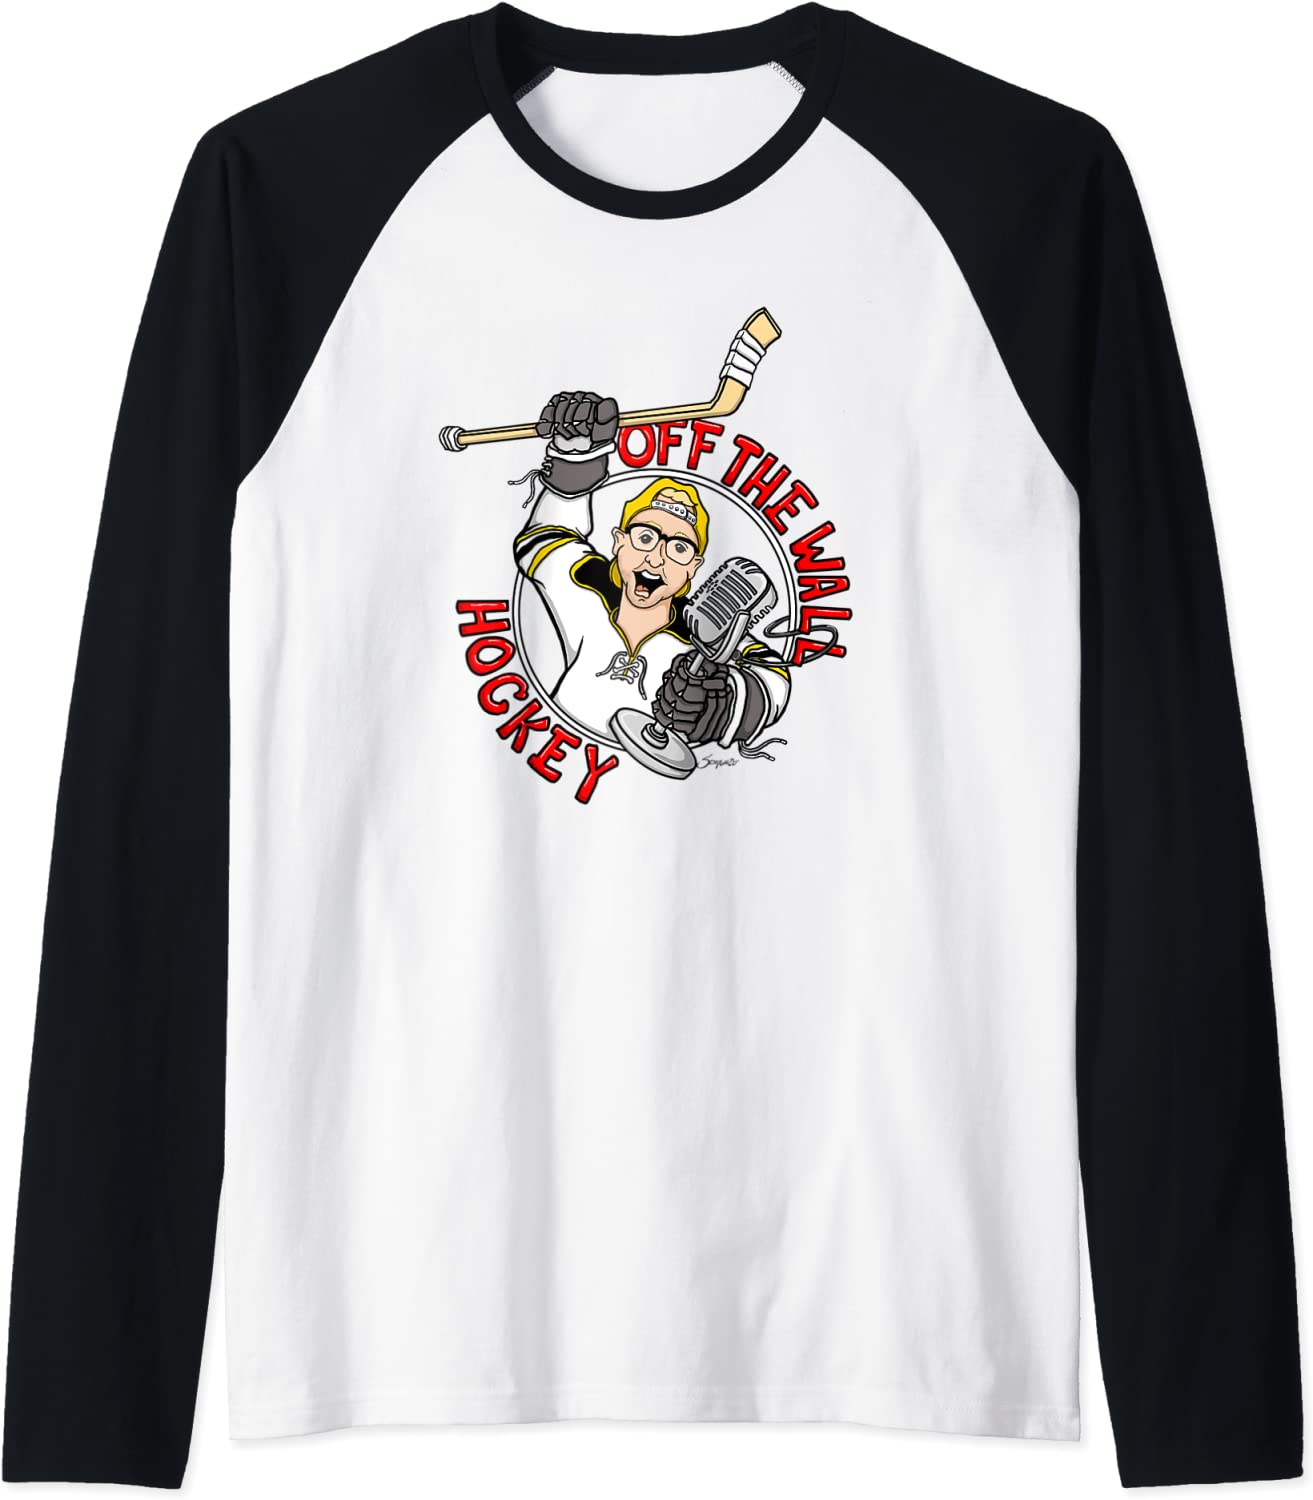 OfftheWallHockey Scottygaado Design Raglan Baseball Shirt